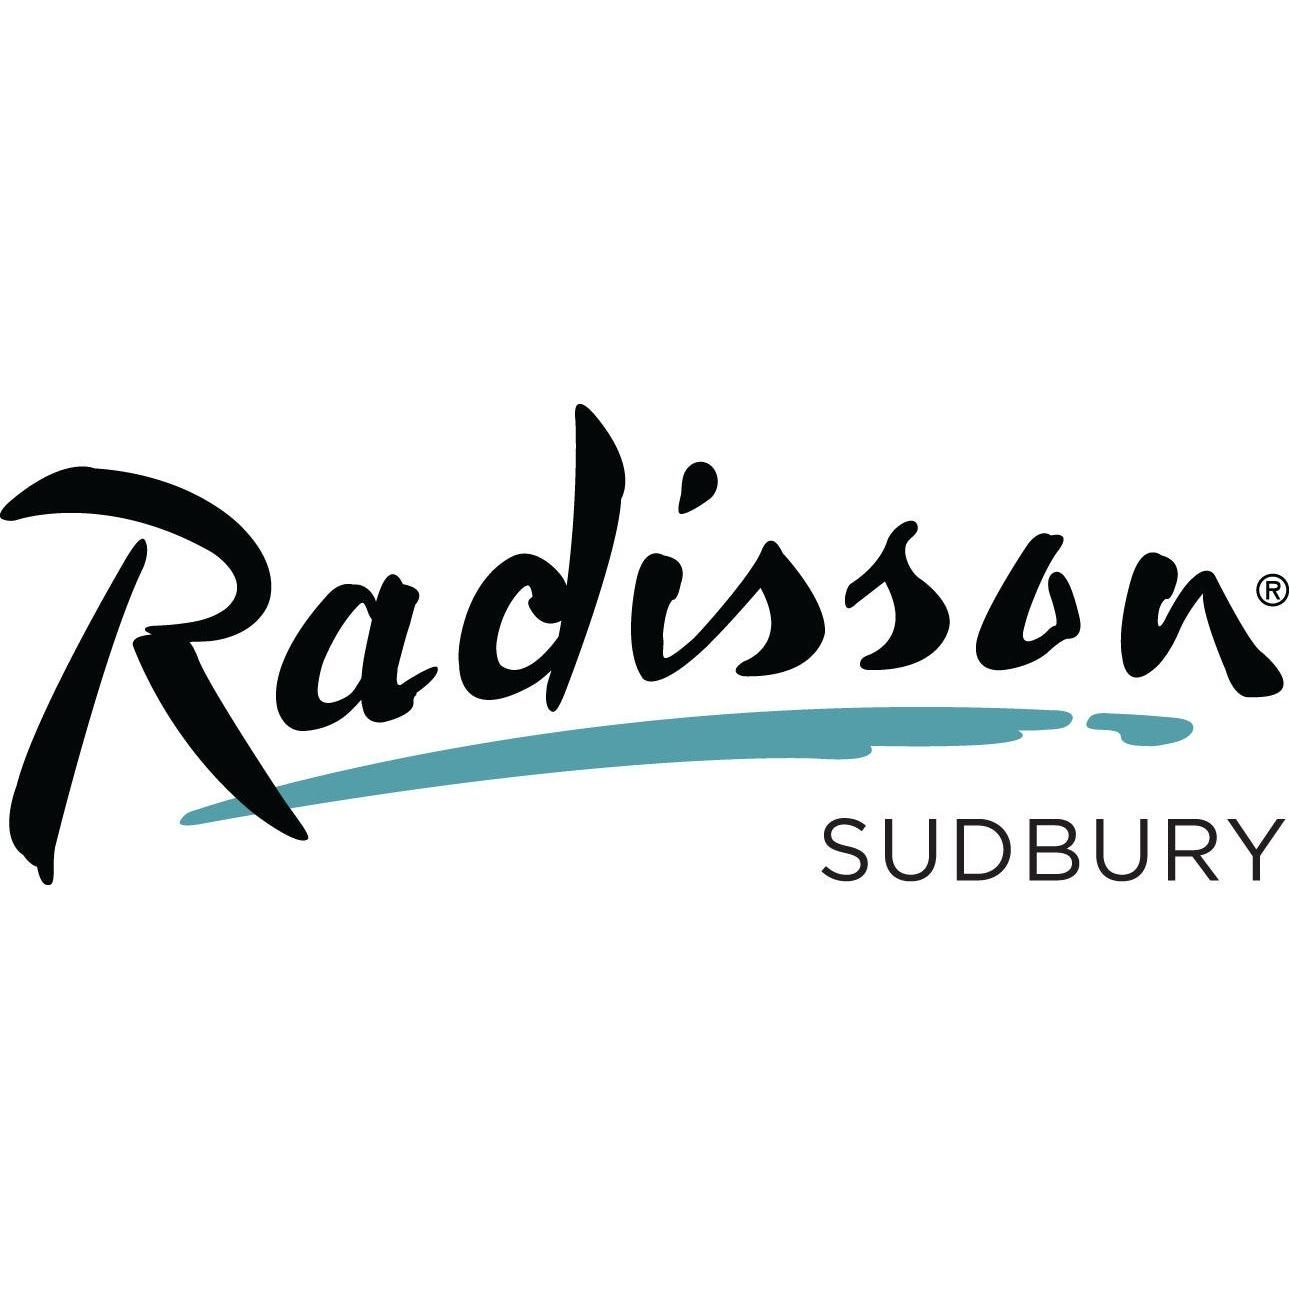 Radisson Hotel Sudbury - Salles de réception et auditoriums